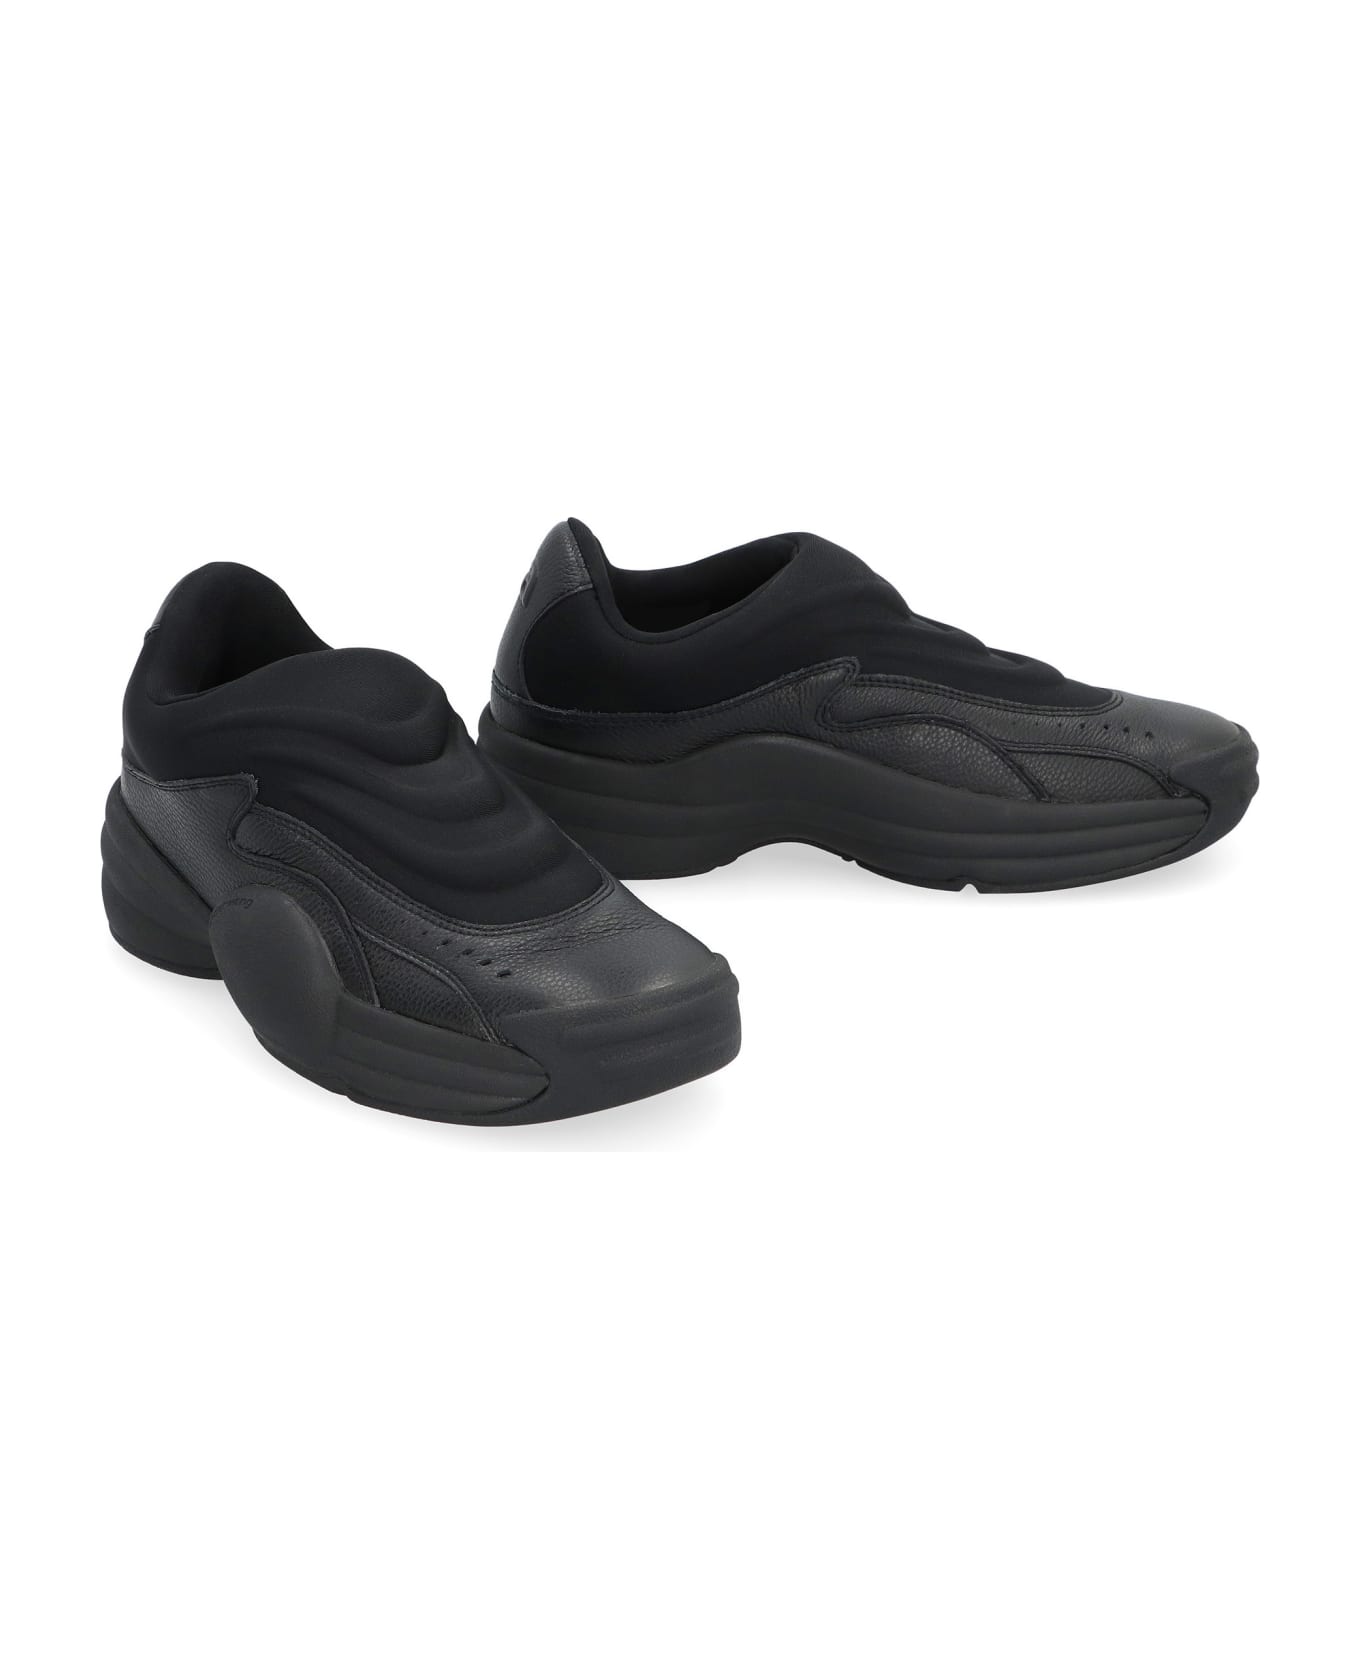 Alexander Wang Leather Slip-on Sneakers - Black